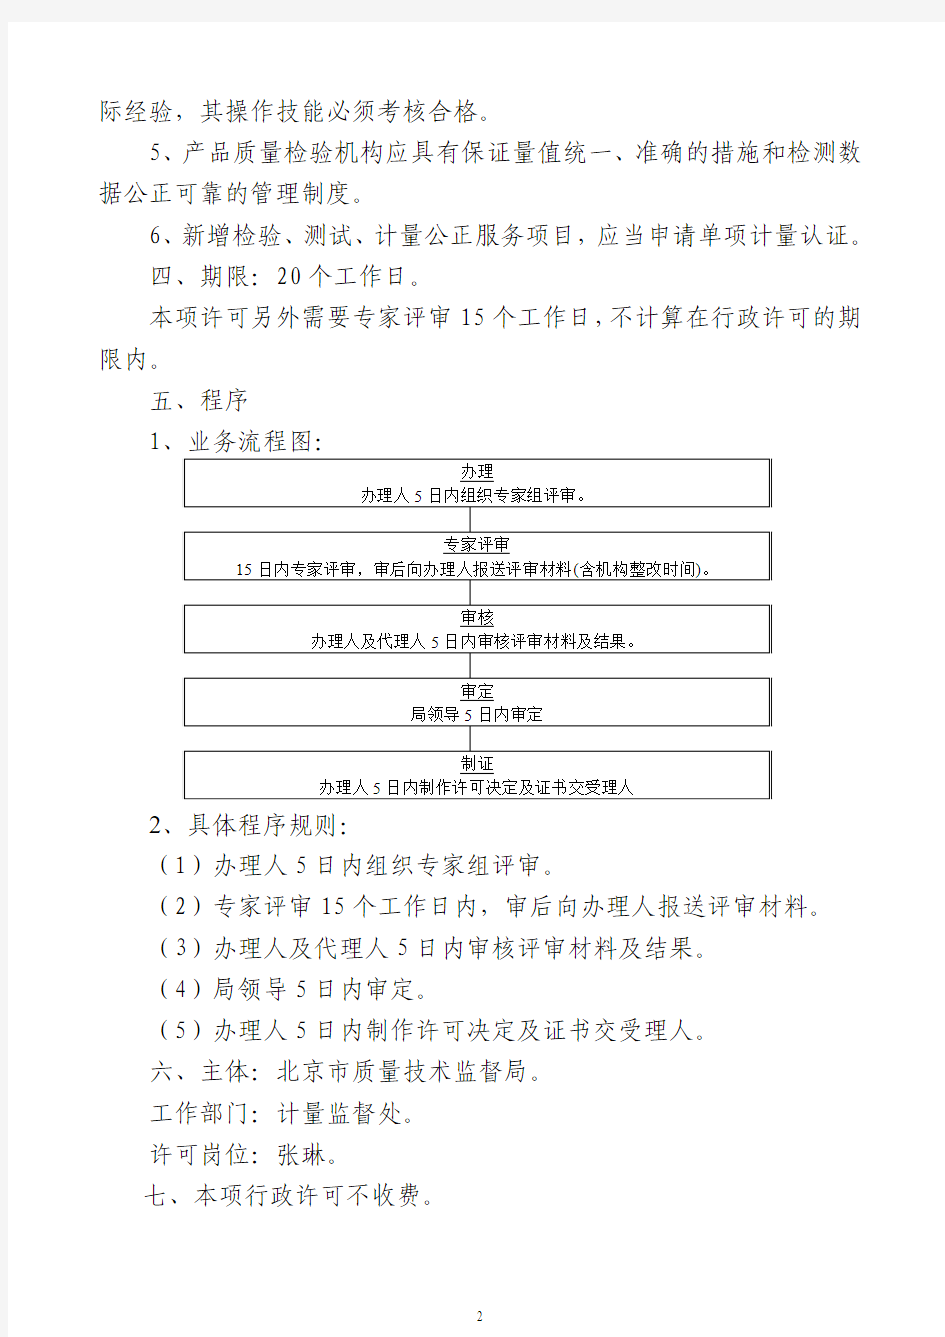 计量认证办理程序 - 北京市人民政府法制办公室网站